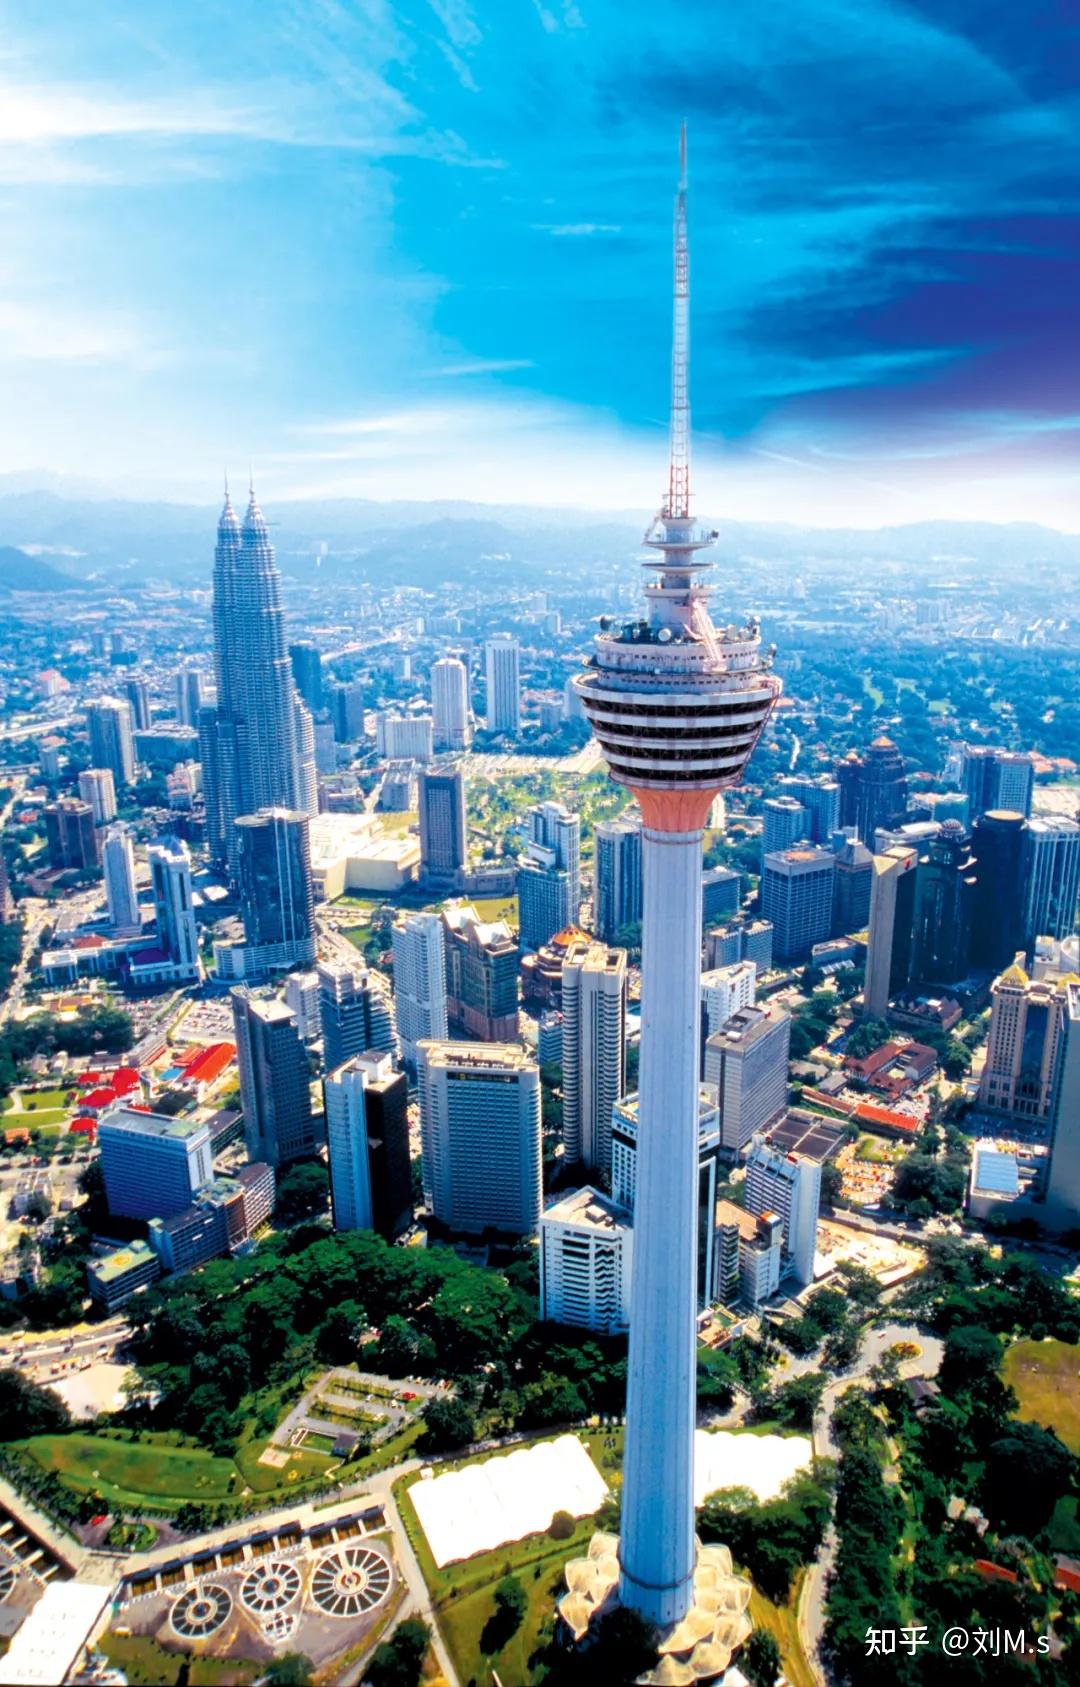 作为马来西亚首都最具标志性的地标之一,吉隆坡塔提供了独特的文化